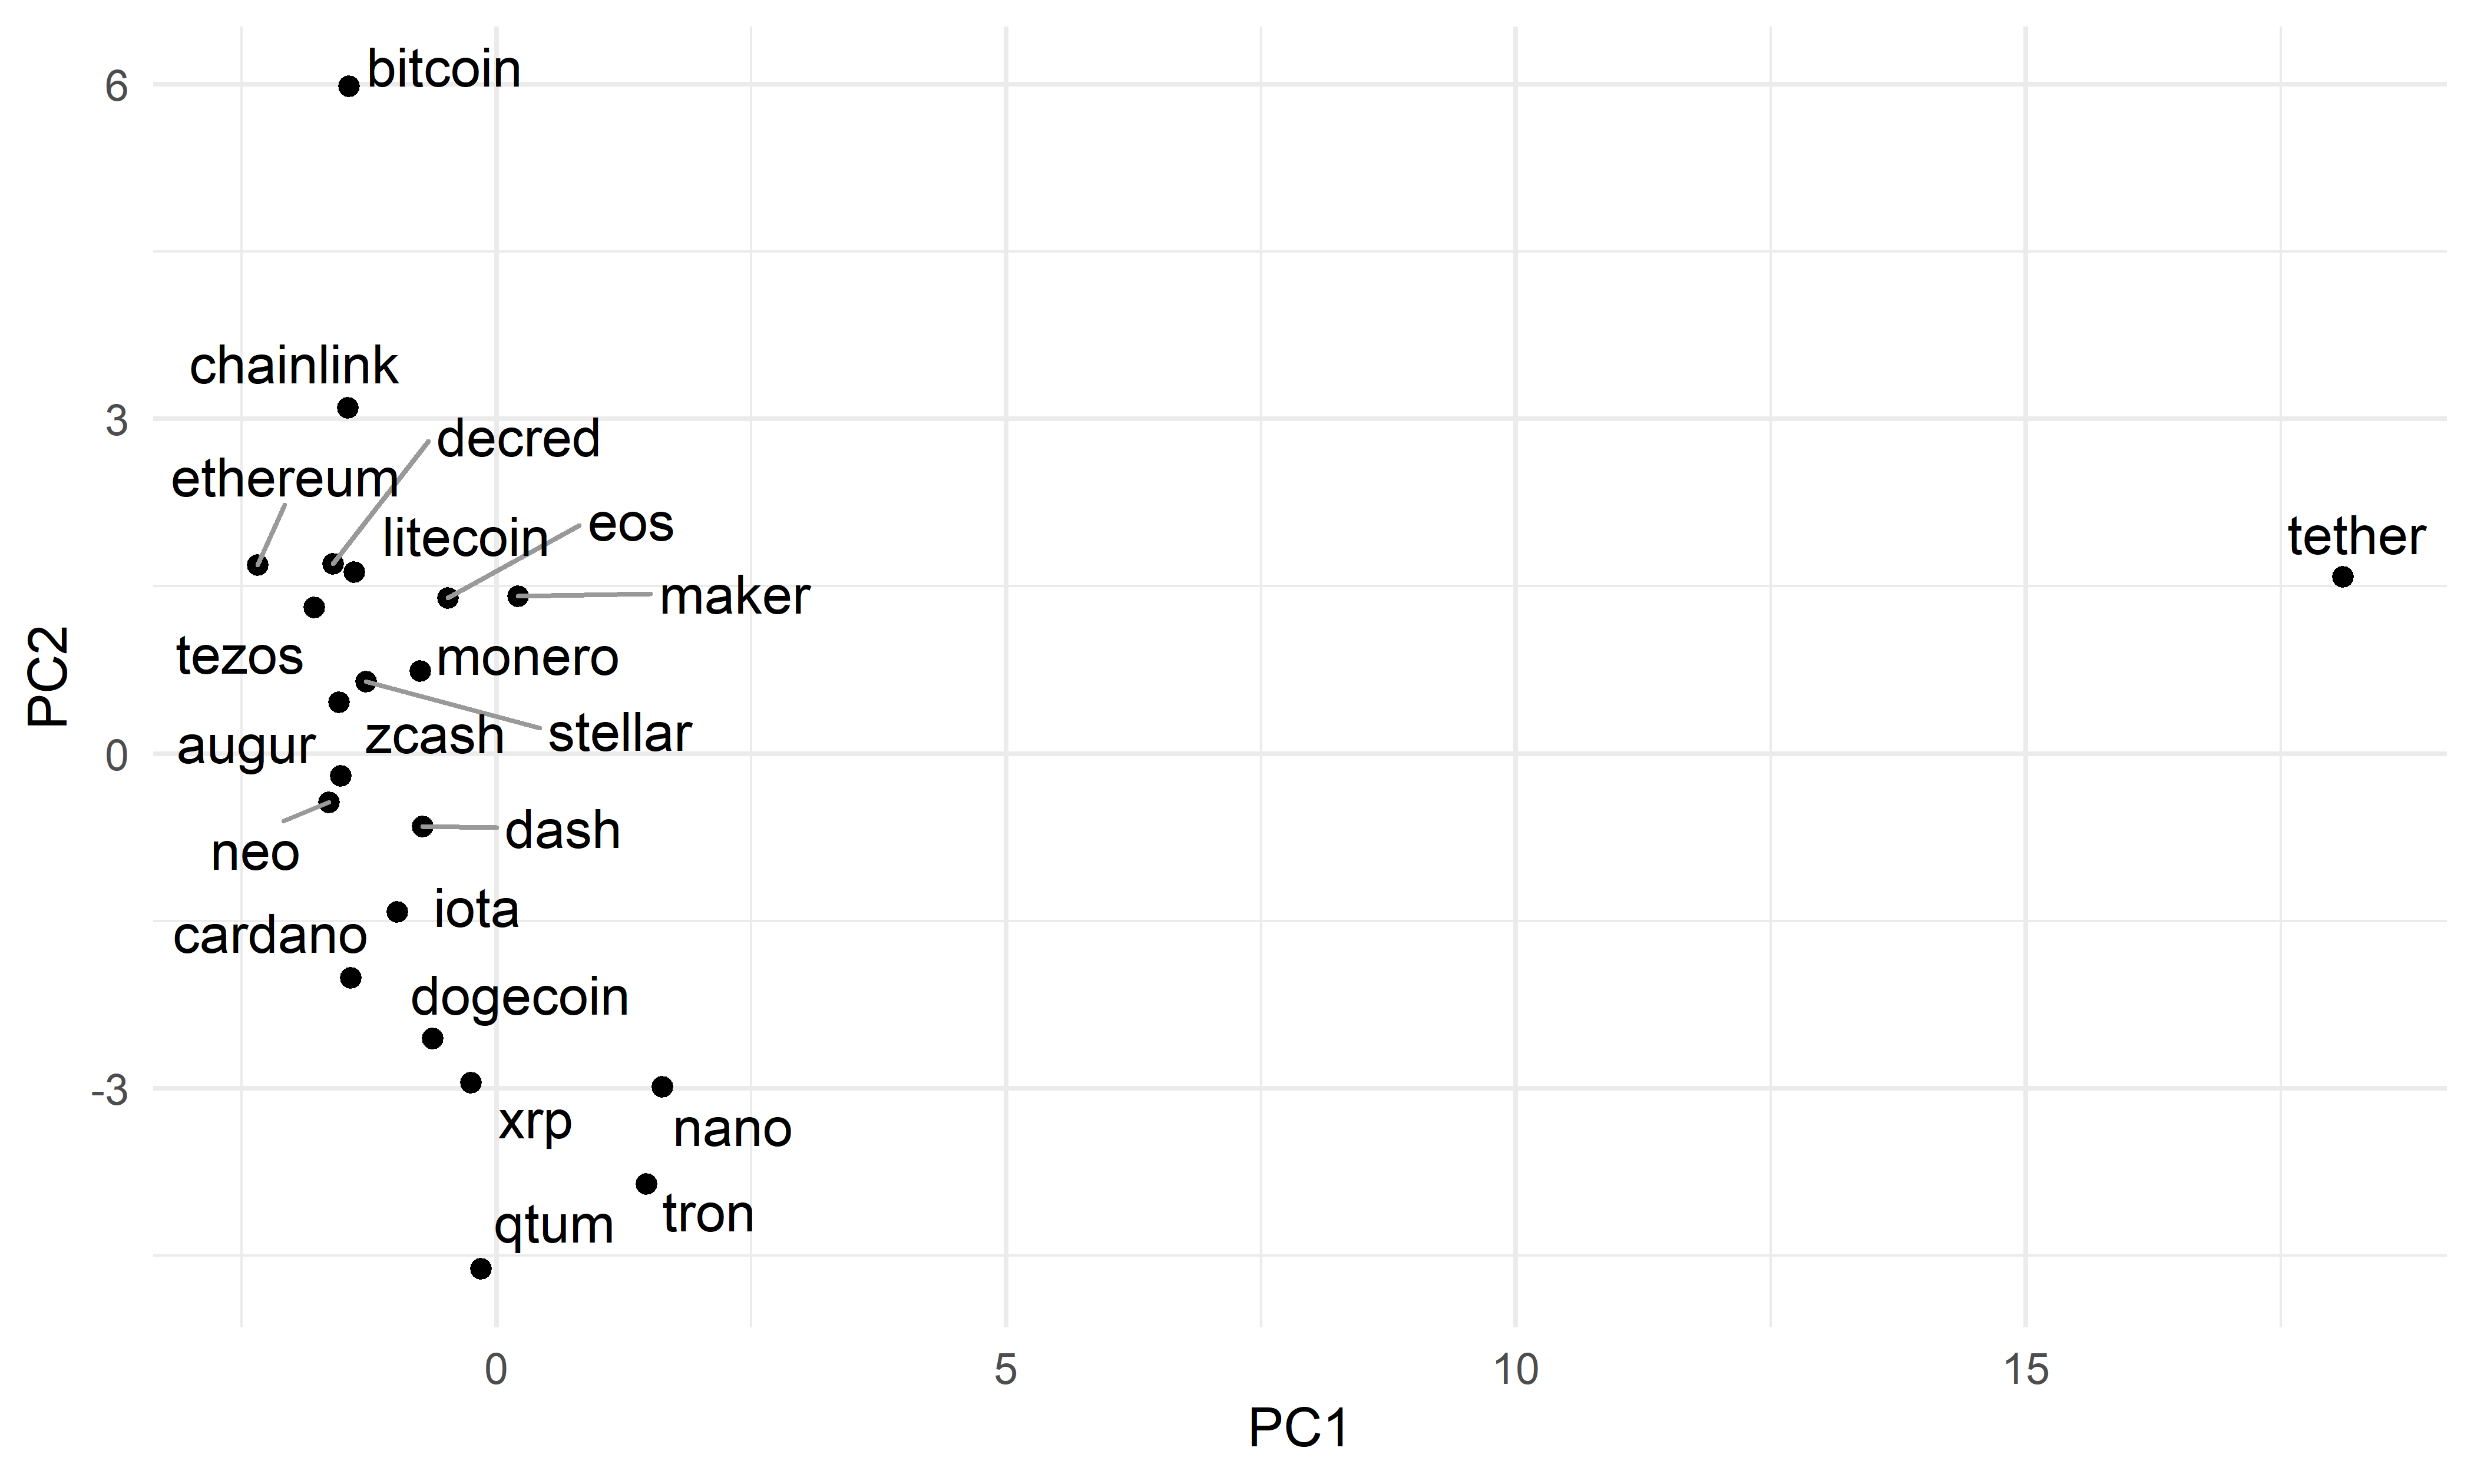 Распределение временных рядов из таблицы cryptos в соответствии со значениями первых двух главных компонент